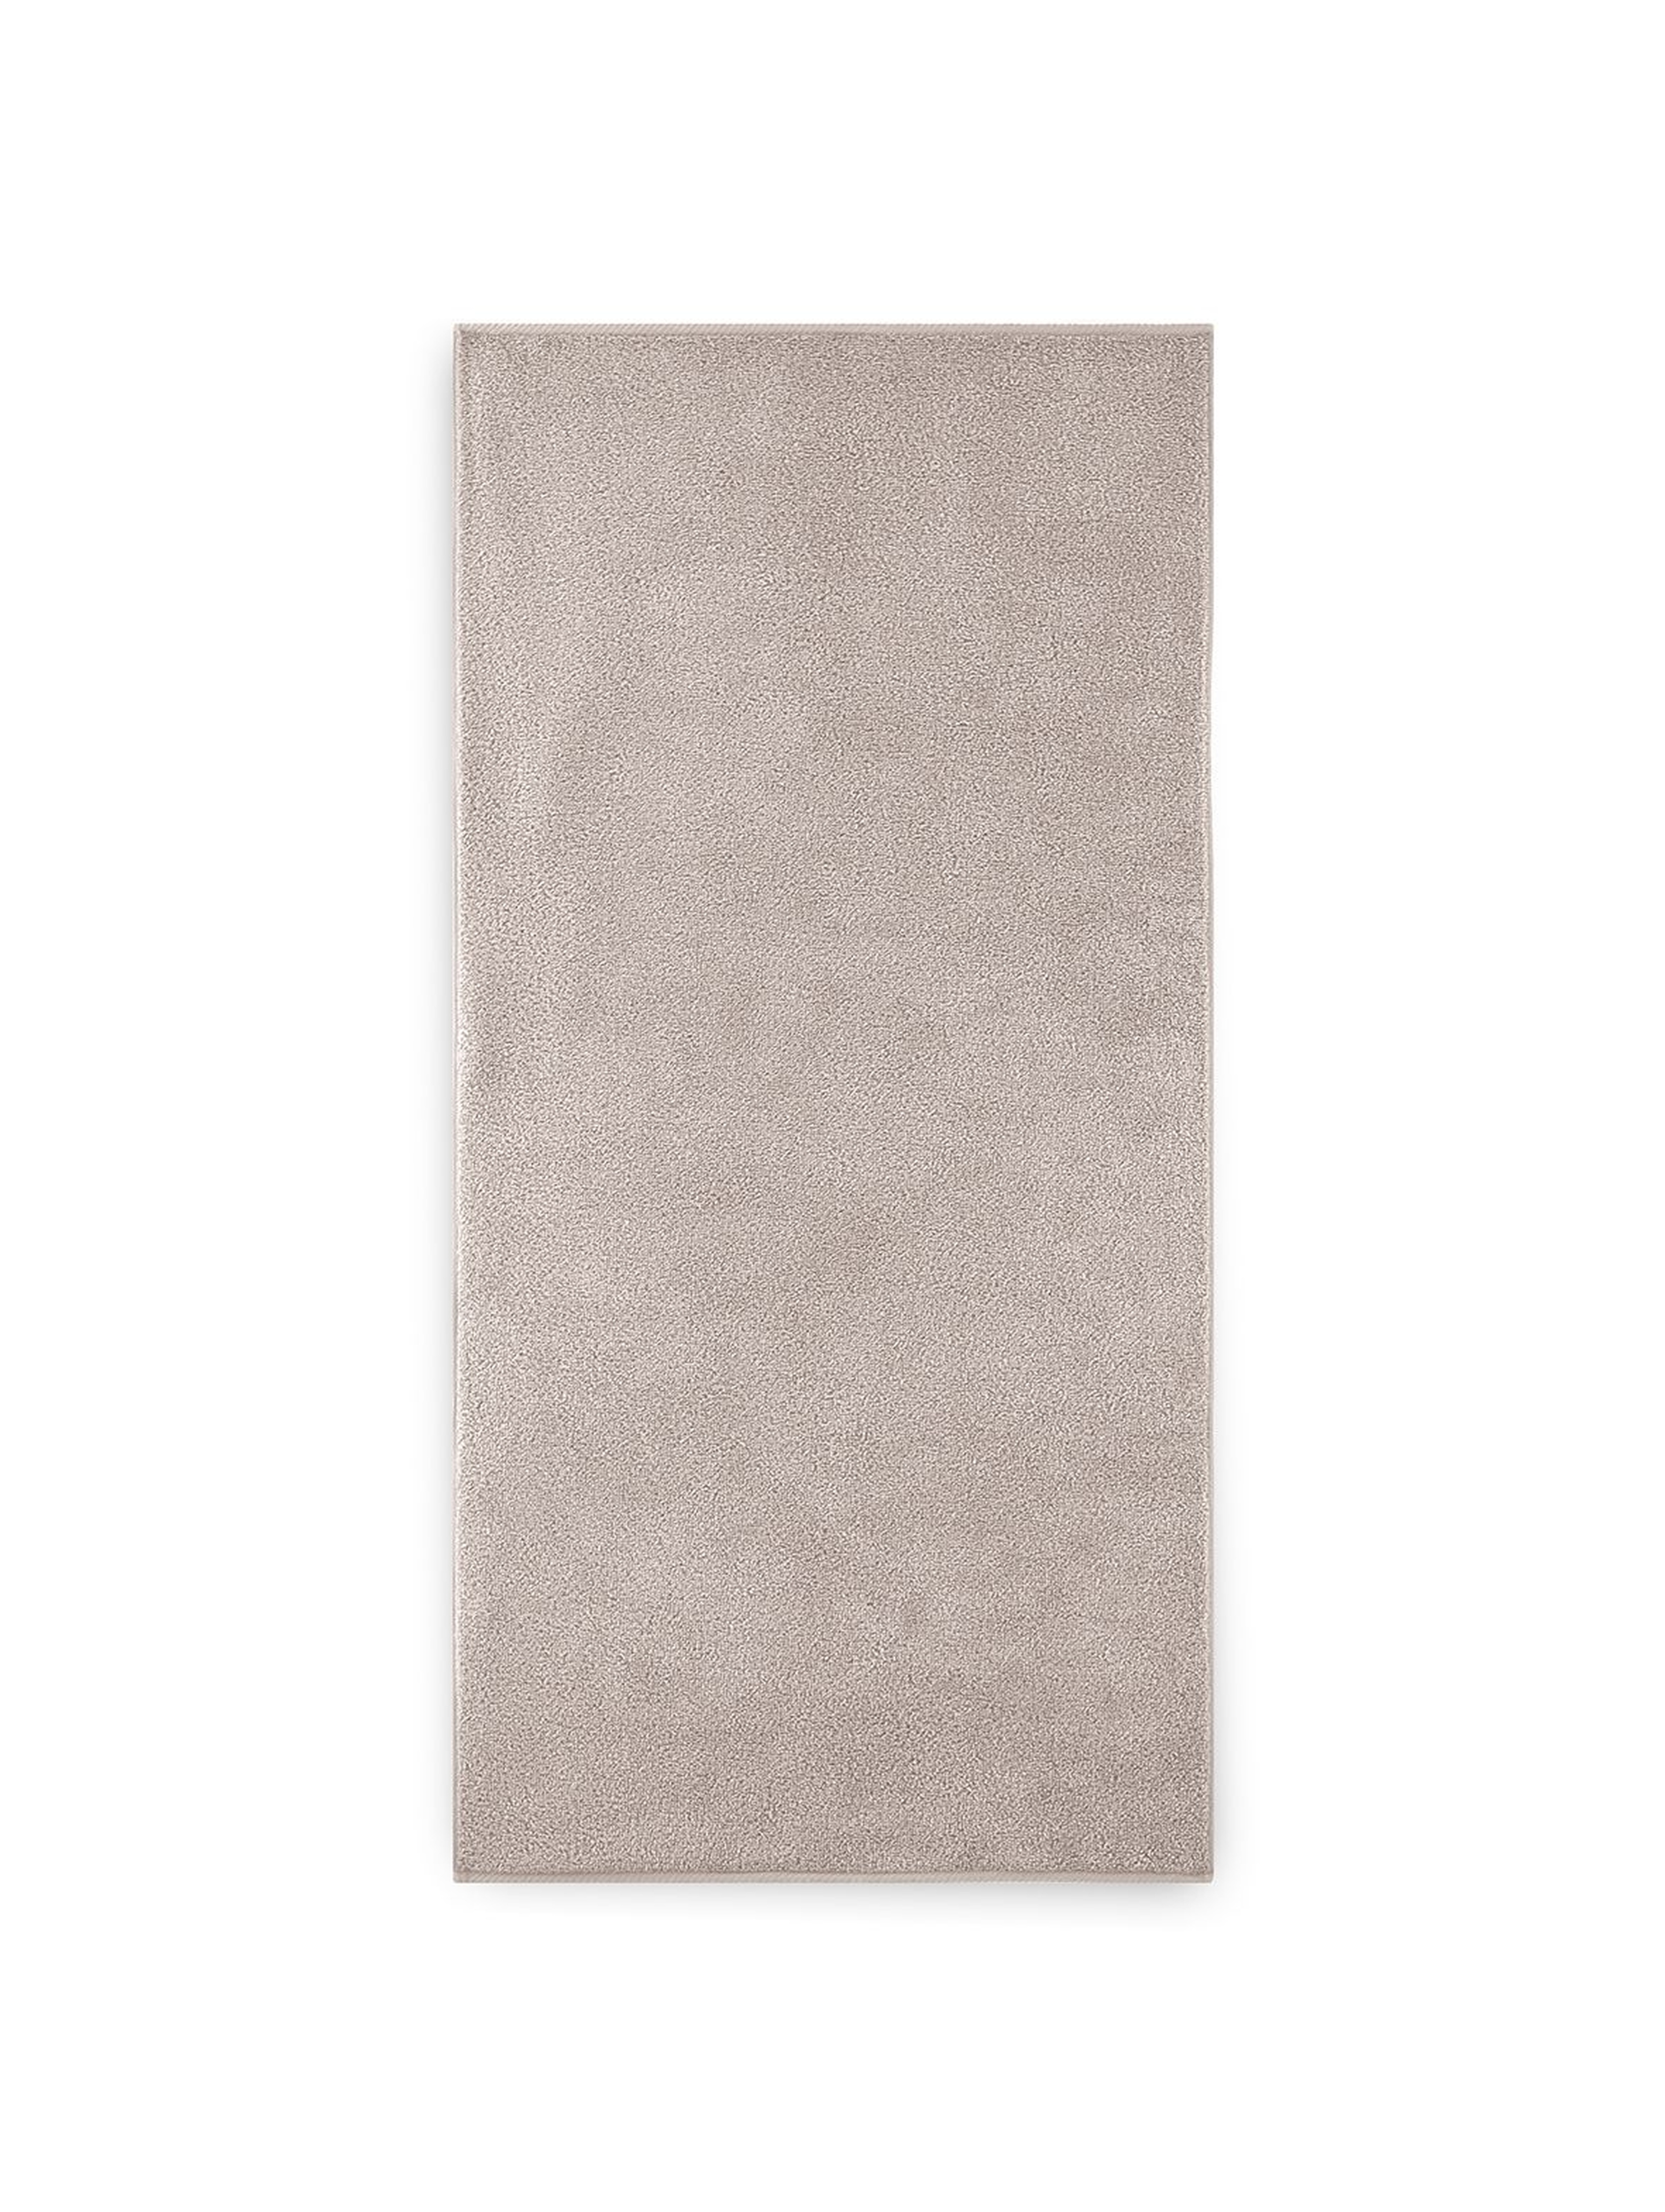 Ręcznik z bawełny egipskiej beżowy 50x100cm